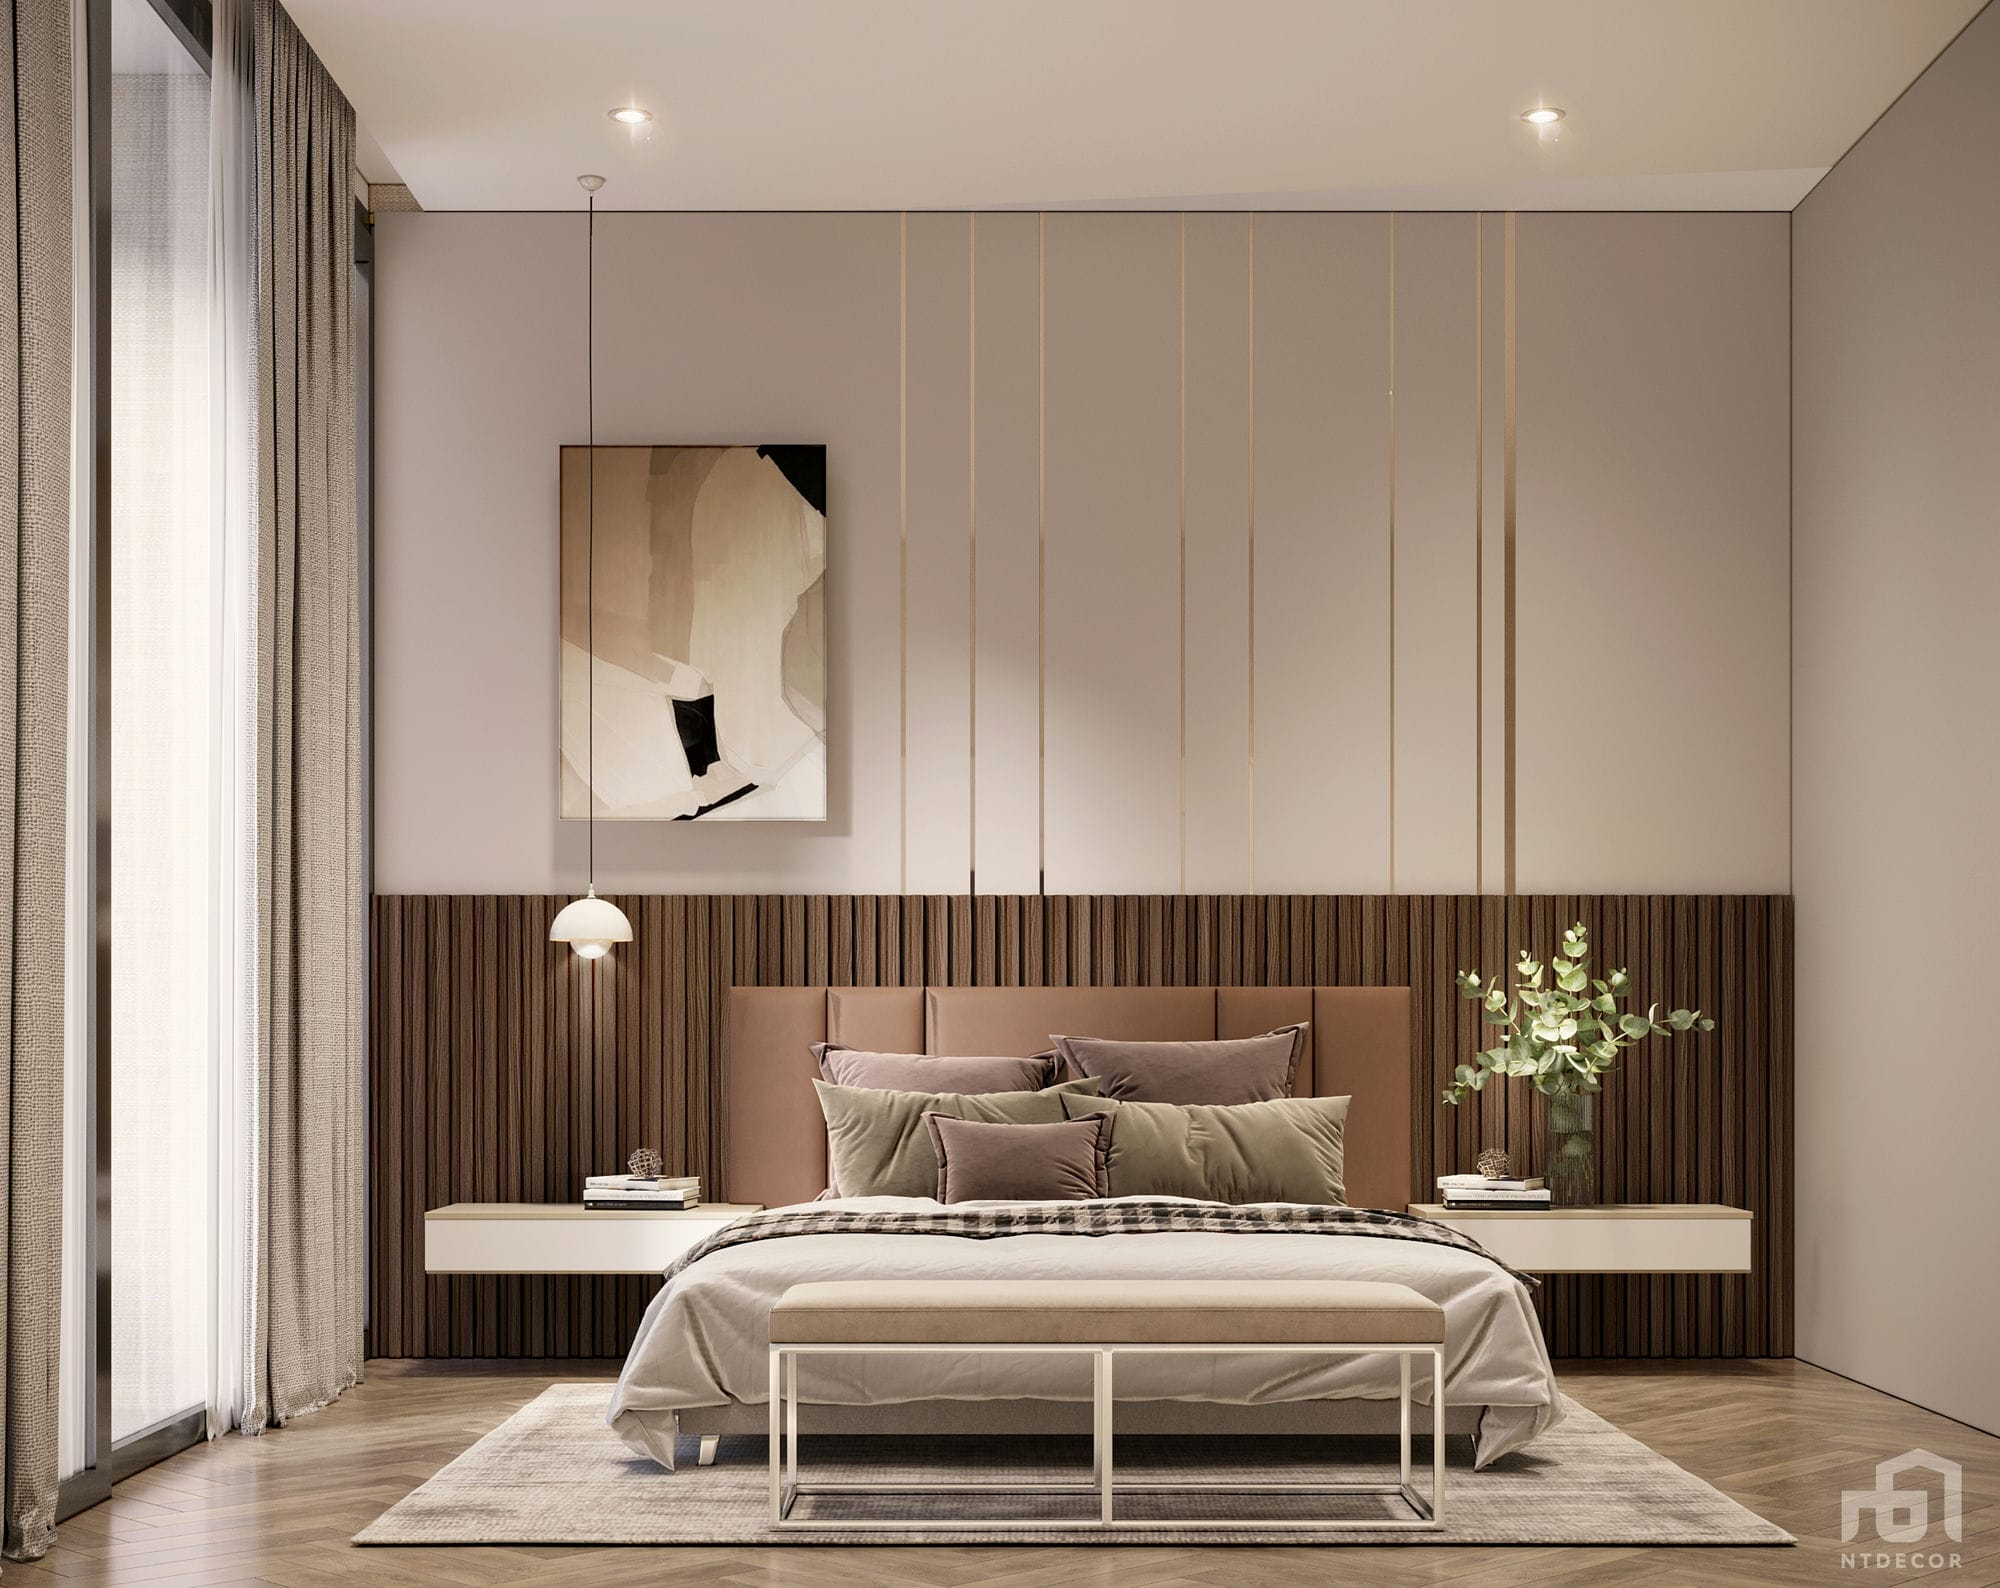 Bedroom 3D Design of Kim Beauty Center | NTDecor